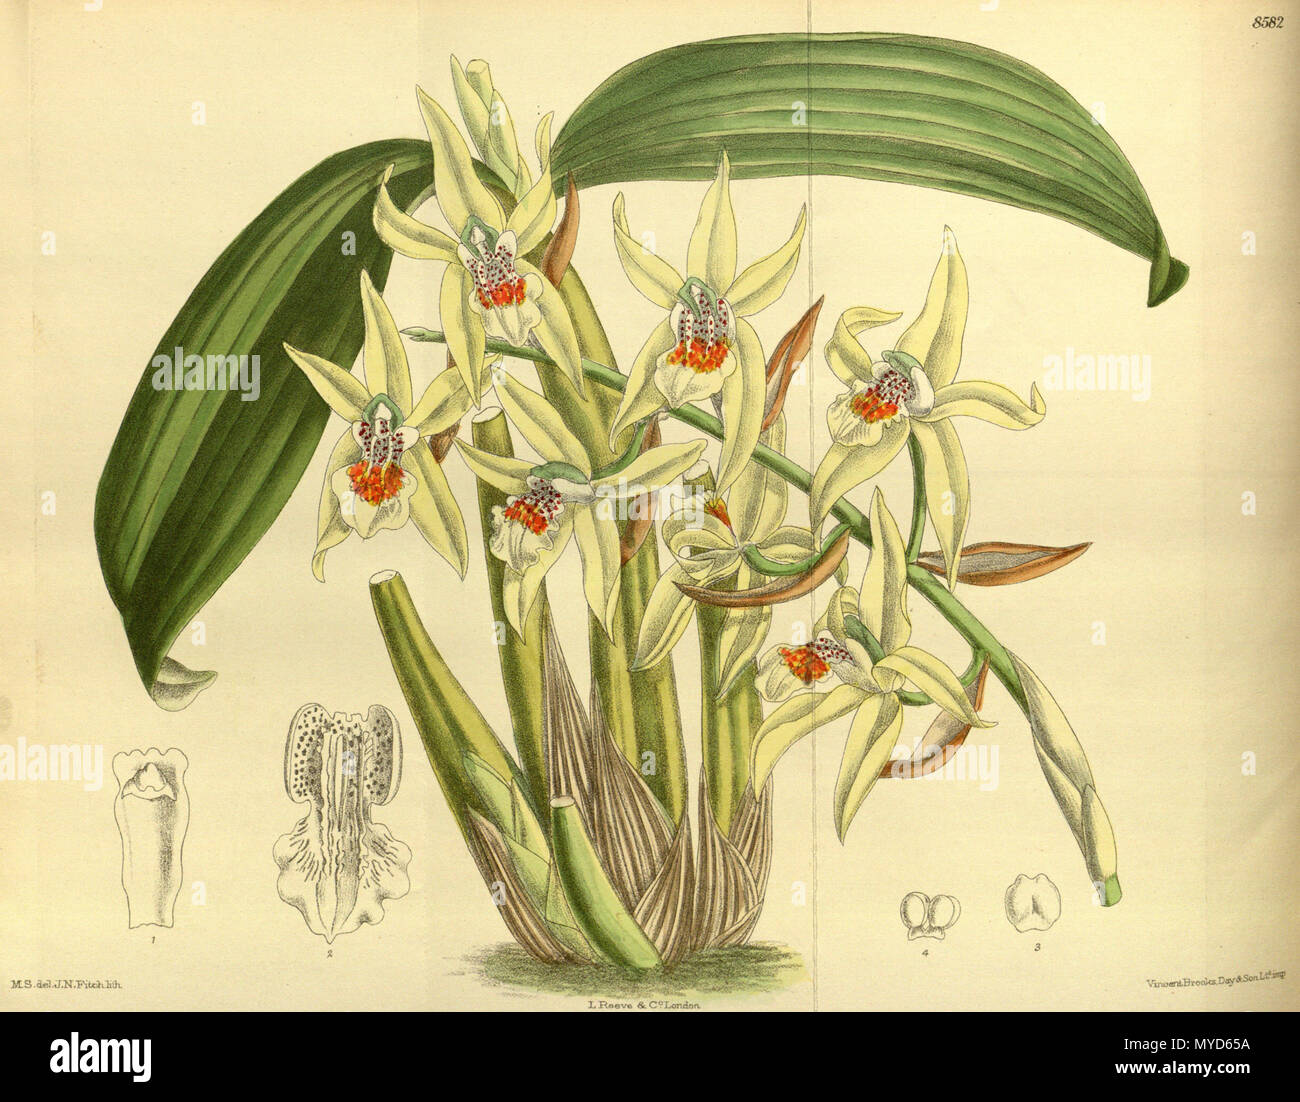 . Coelogyne brachyptera, Orchidaceae . 1914. M.S. del., J.N.Fitch lith. 118 Coelogyne brachyptera 140-8582 Stock Photo